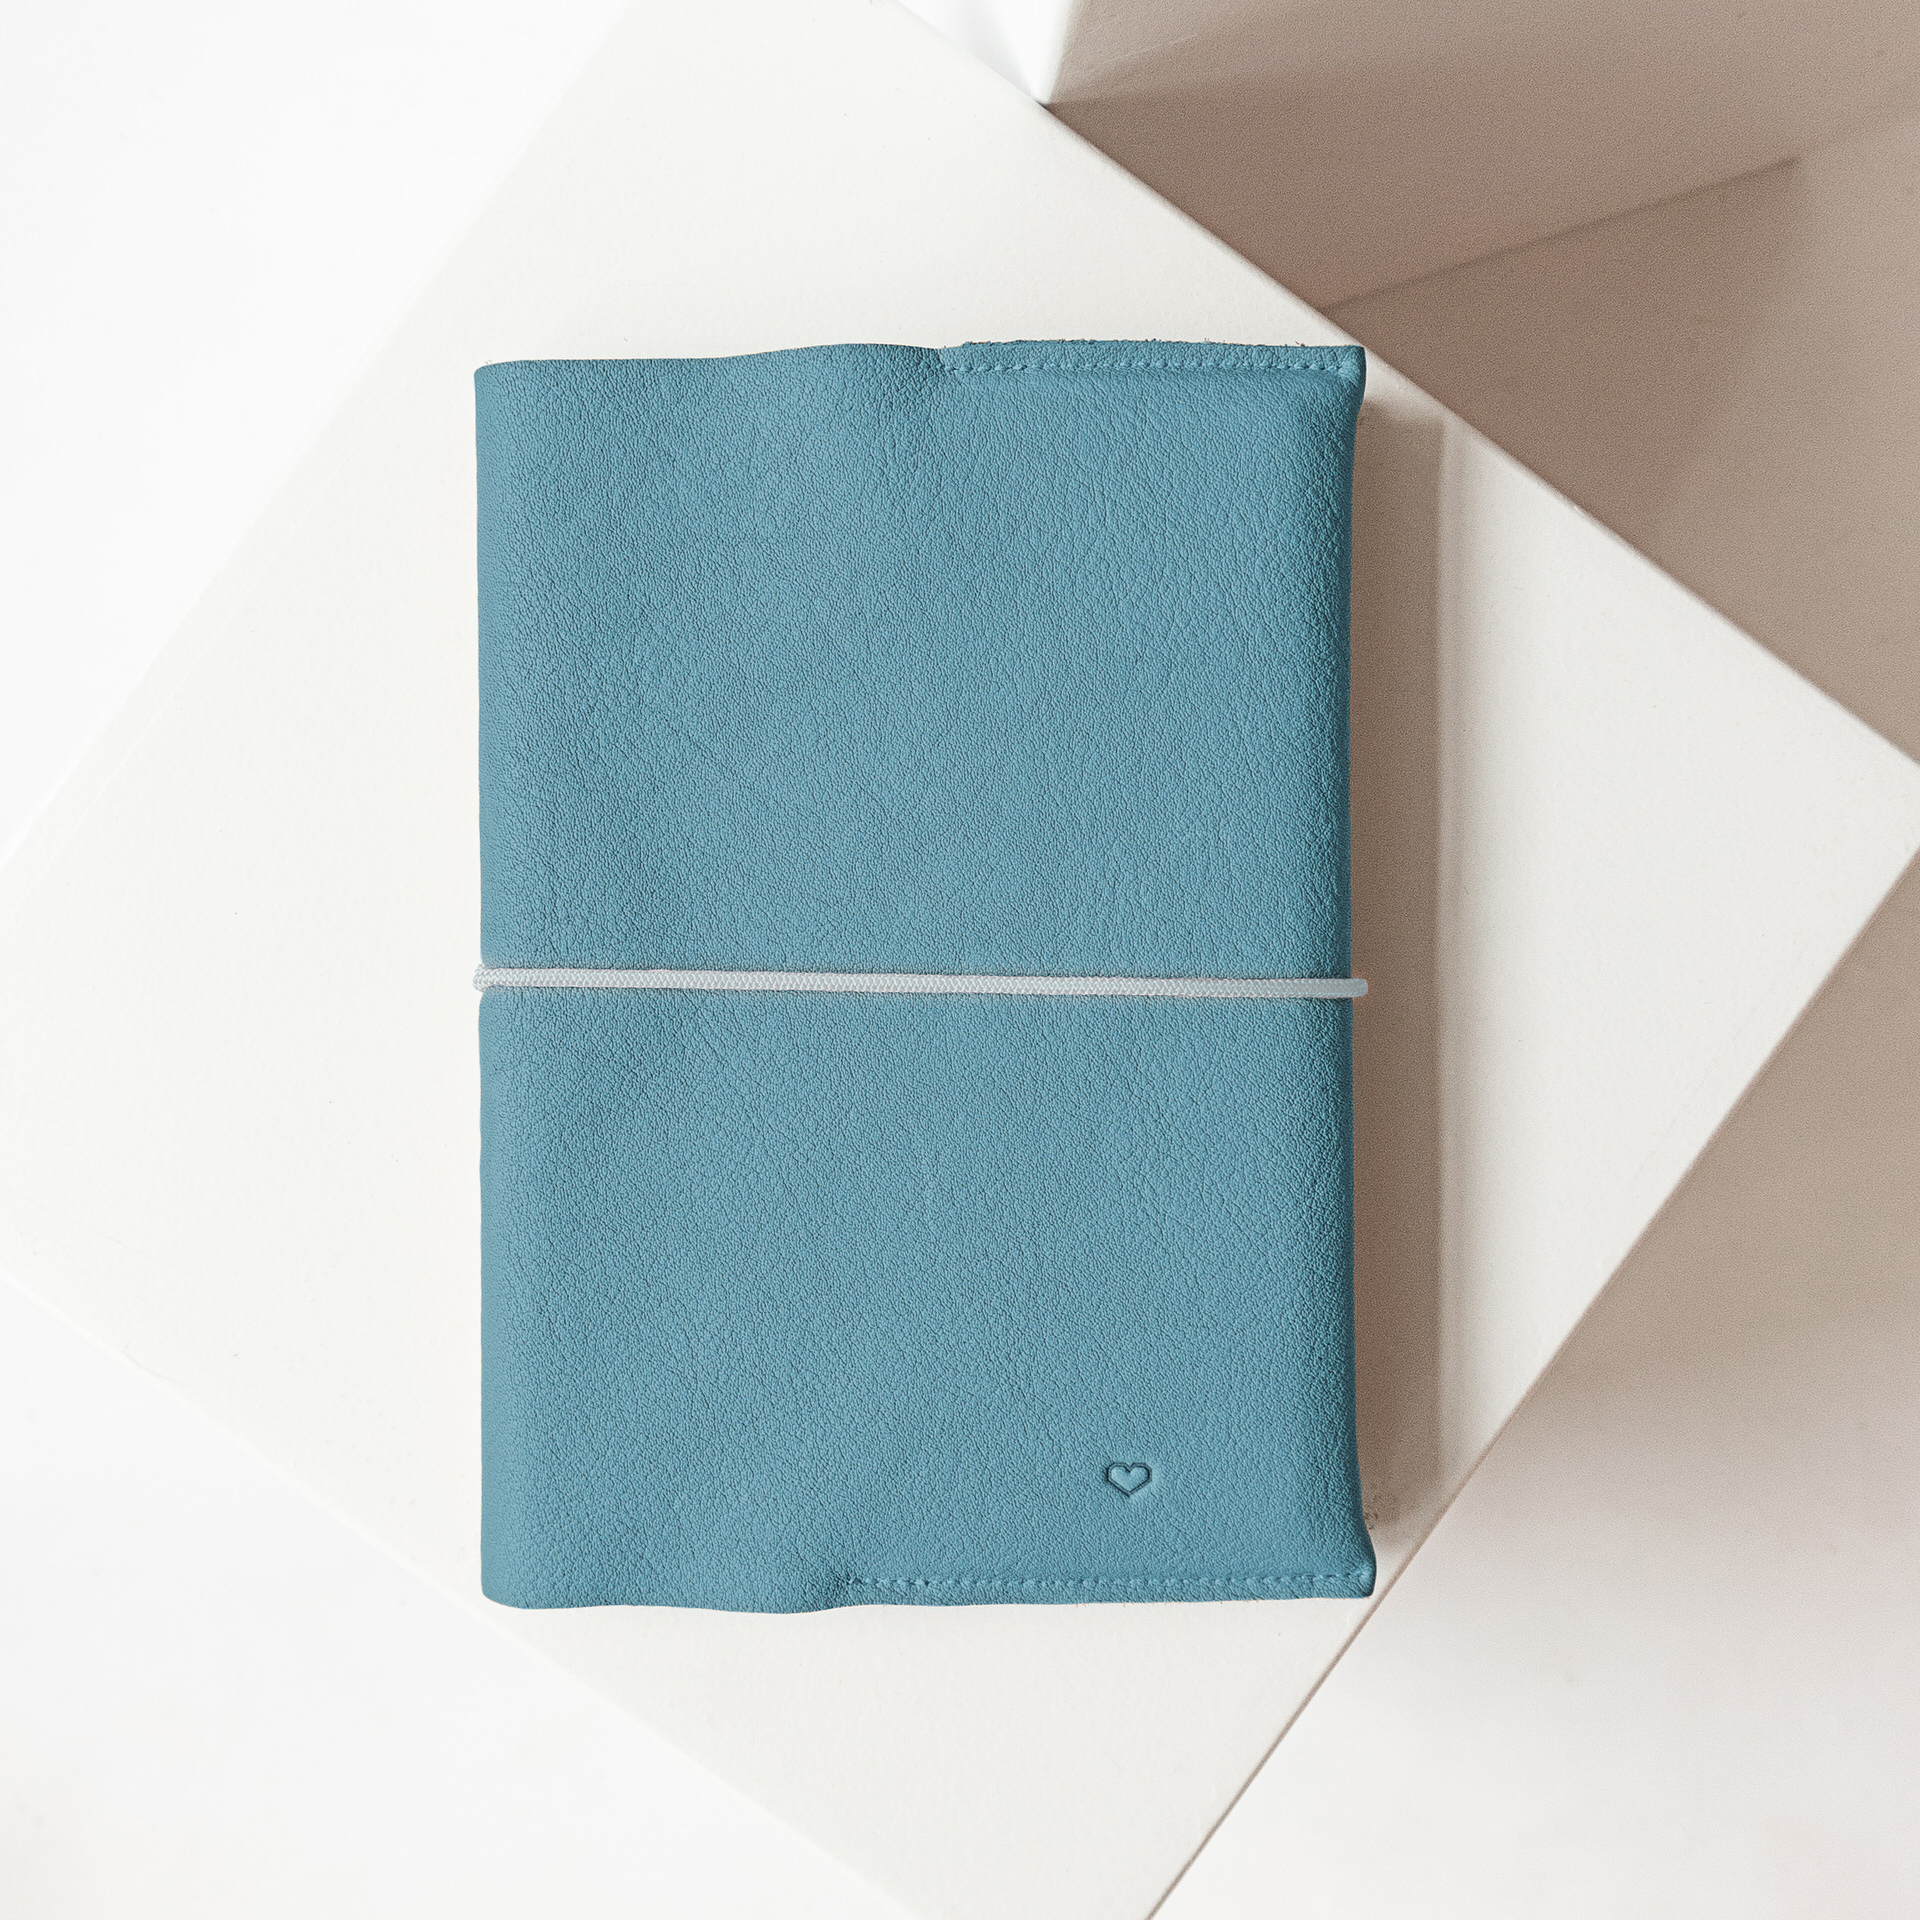 U-Hefthülle EVE aus nachhaltigem Naturleder in Hellblau mit schlichter Herz-Prägung und cremefarbenem Verschlussband